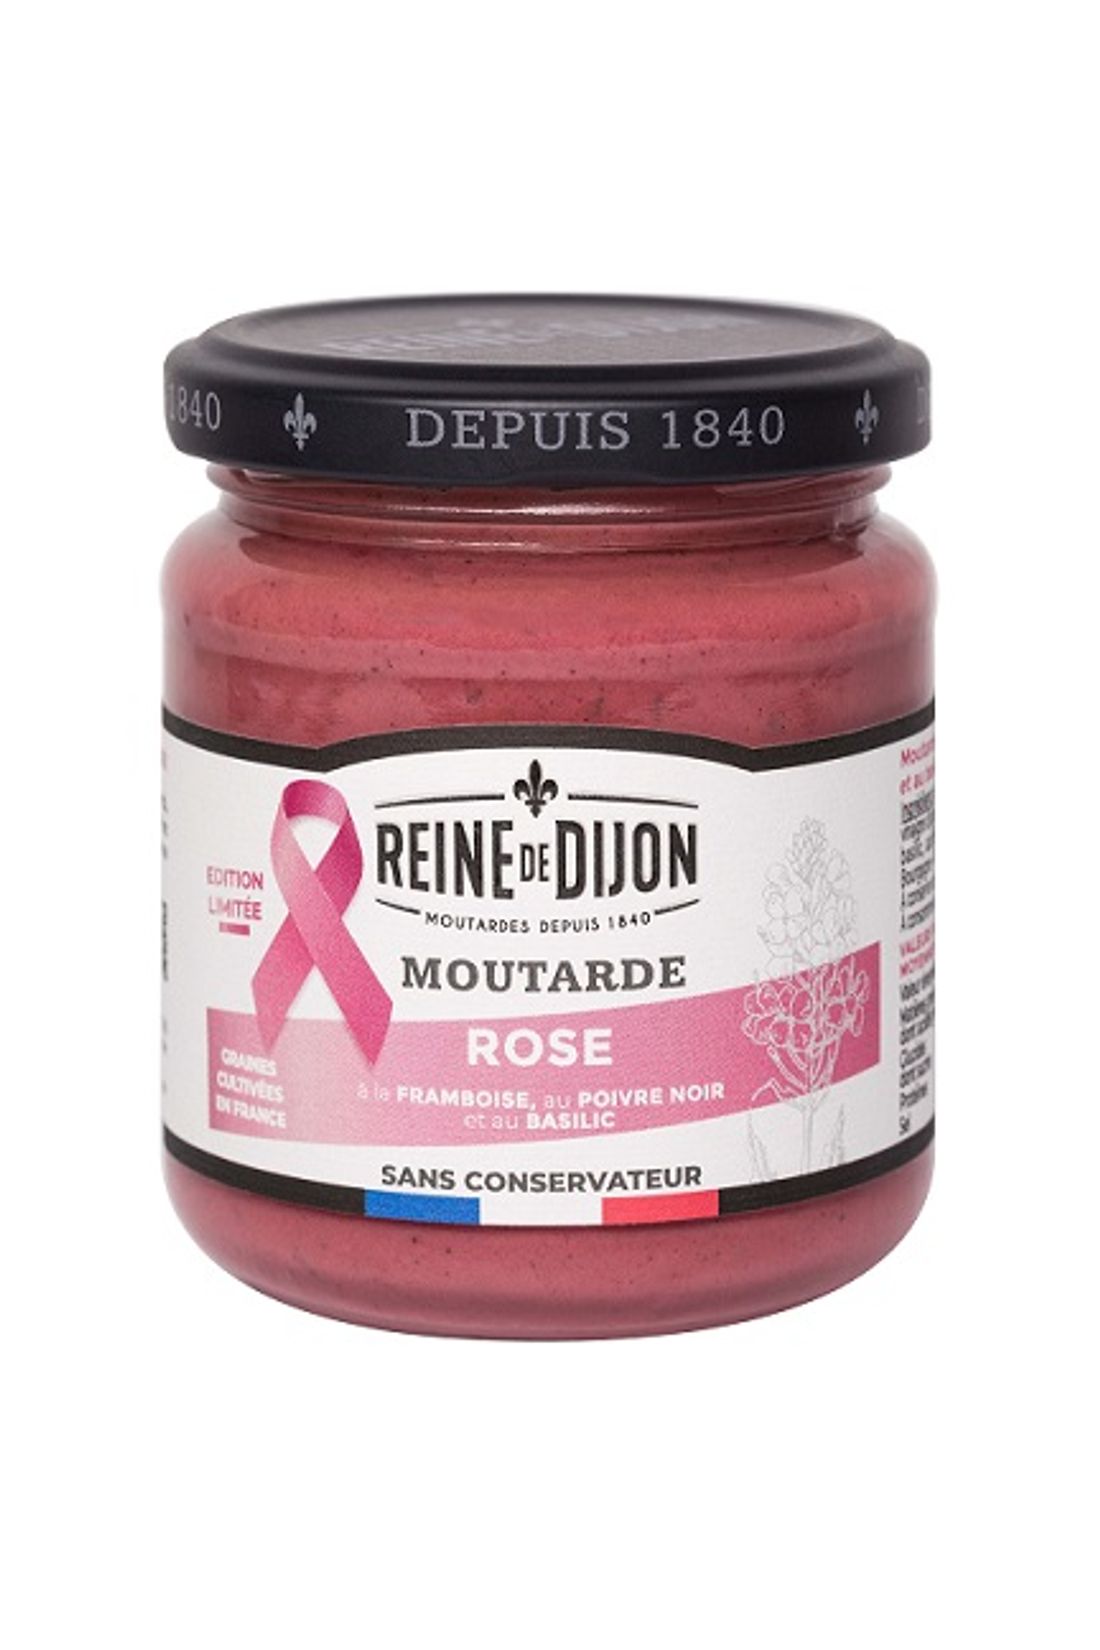 Le moutardier de Côte d’Or « Reine de Dijon » a conçu un pot de couleur rose 